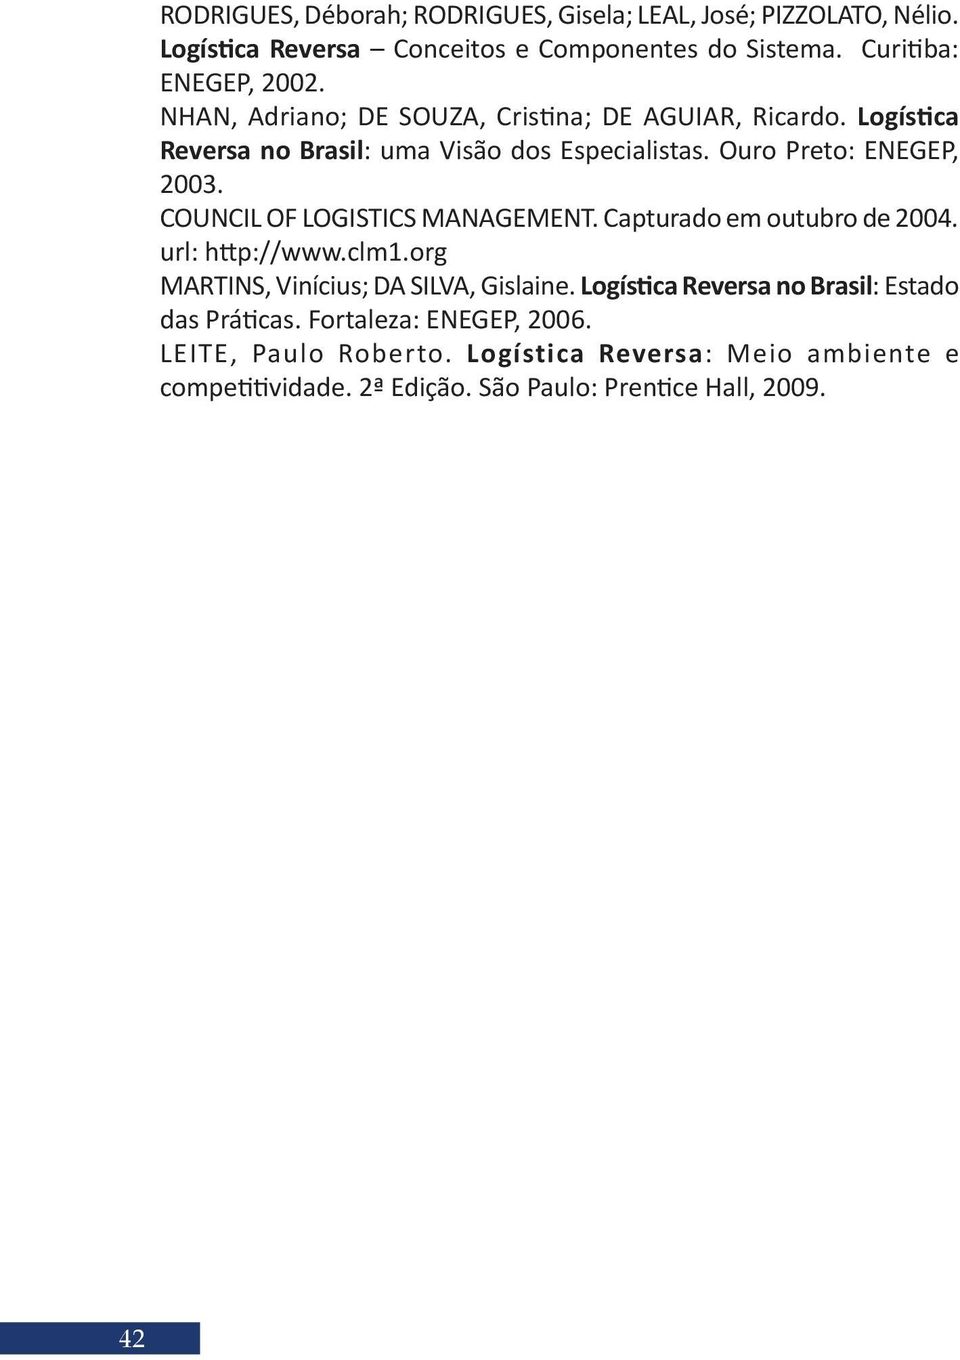 COUNCIL OF LOGISTICS MANAGEMENT. Capturado em outubro de 2004. url: http://www.clm1.org MARTINS, Vinícius; DA SILVA, Gislaine.